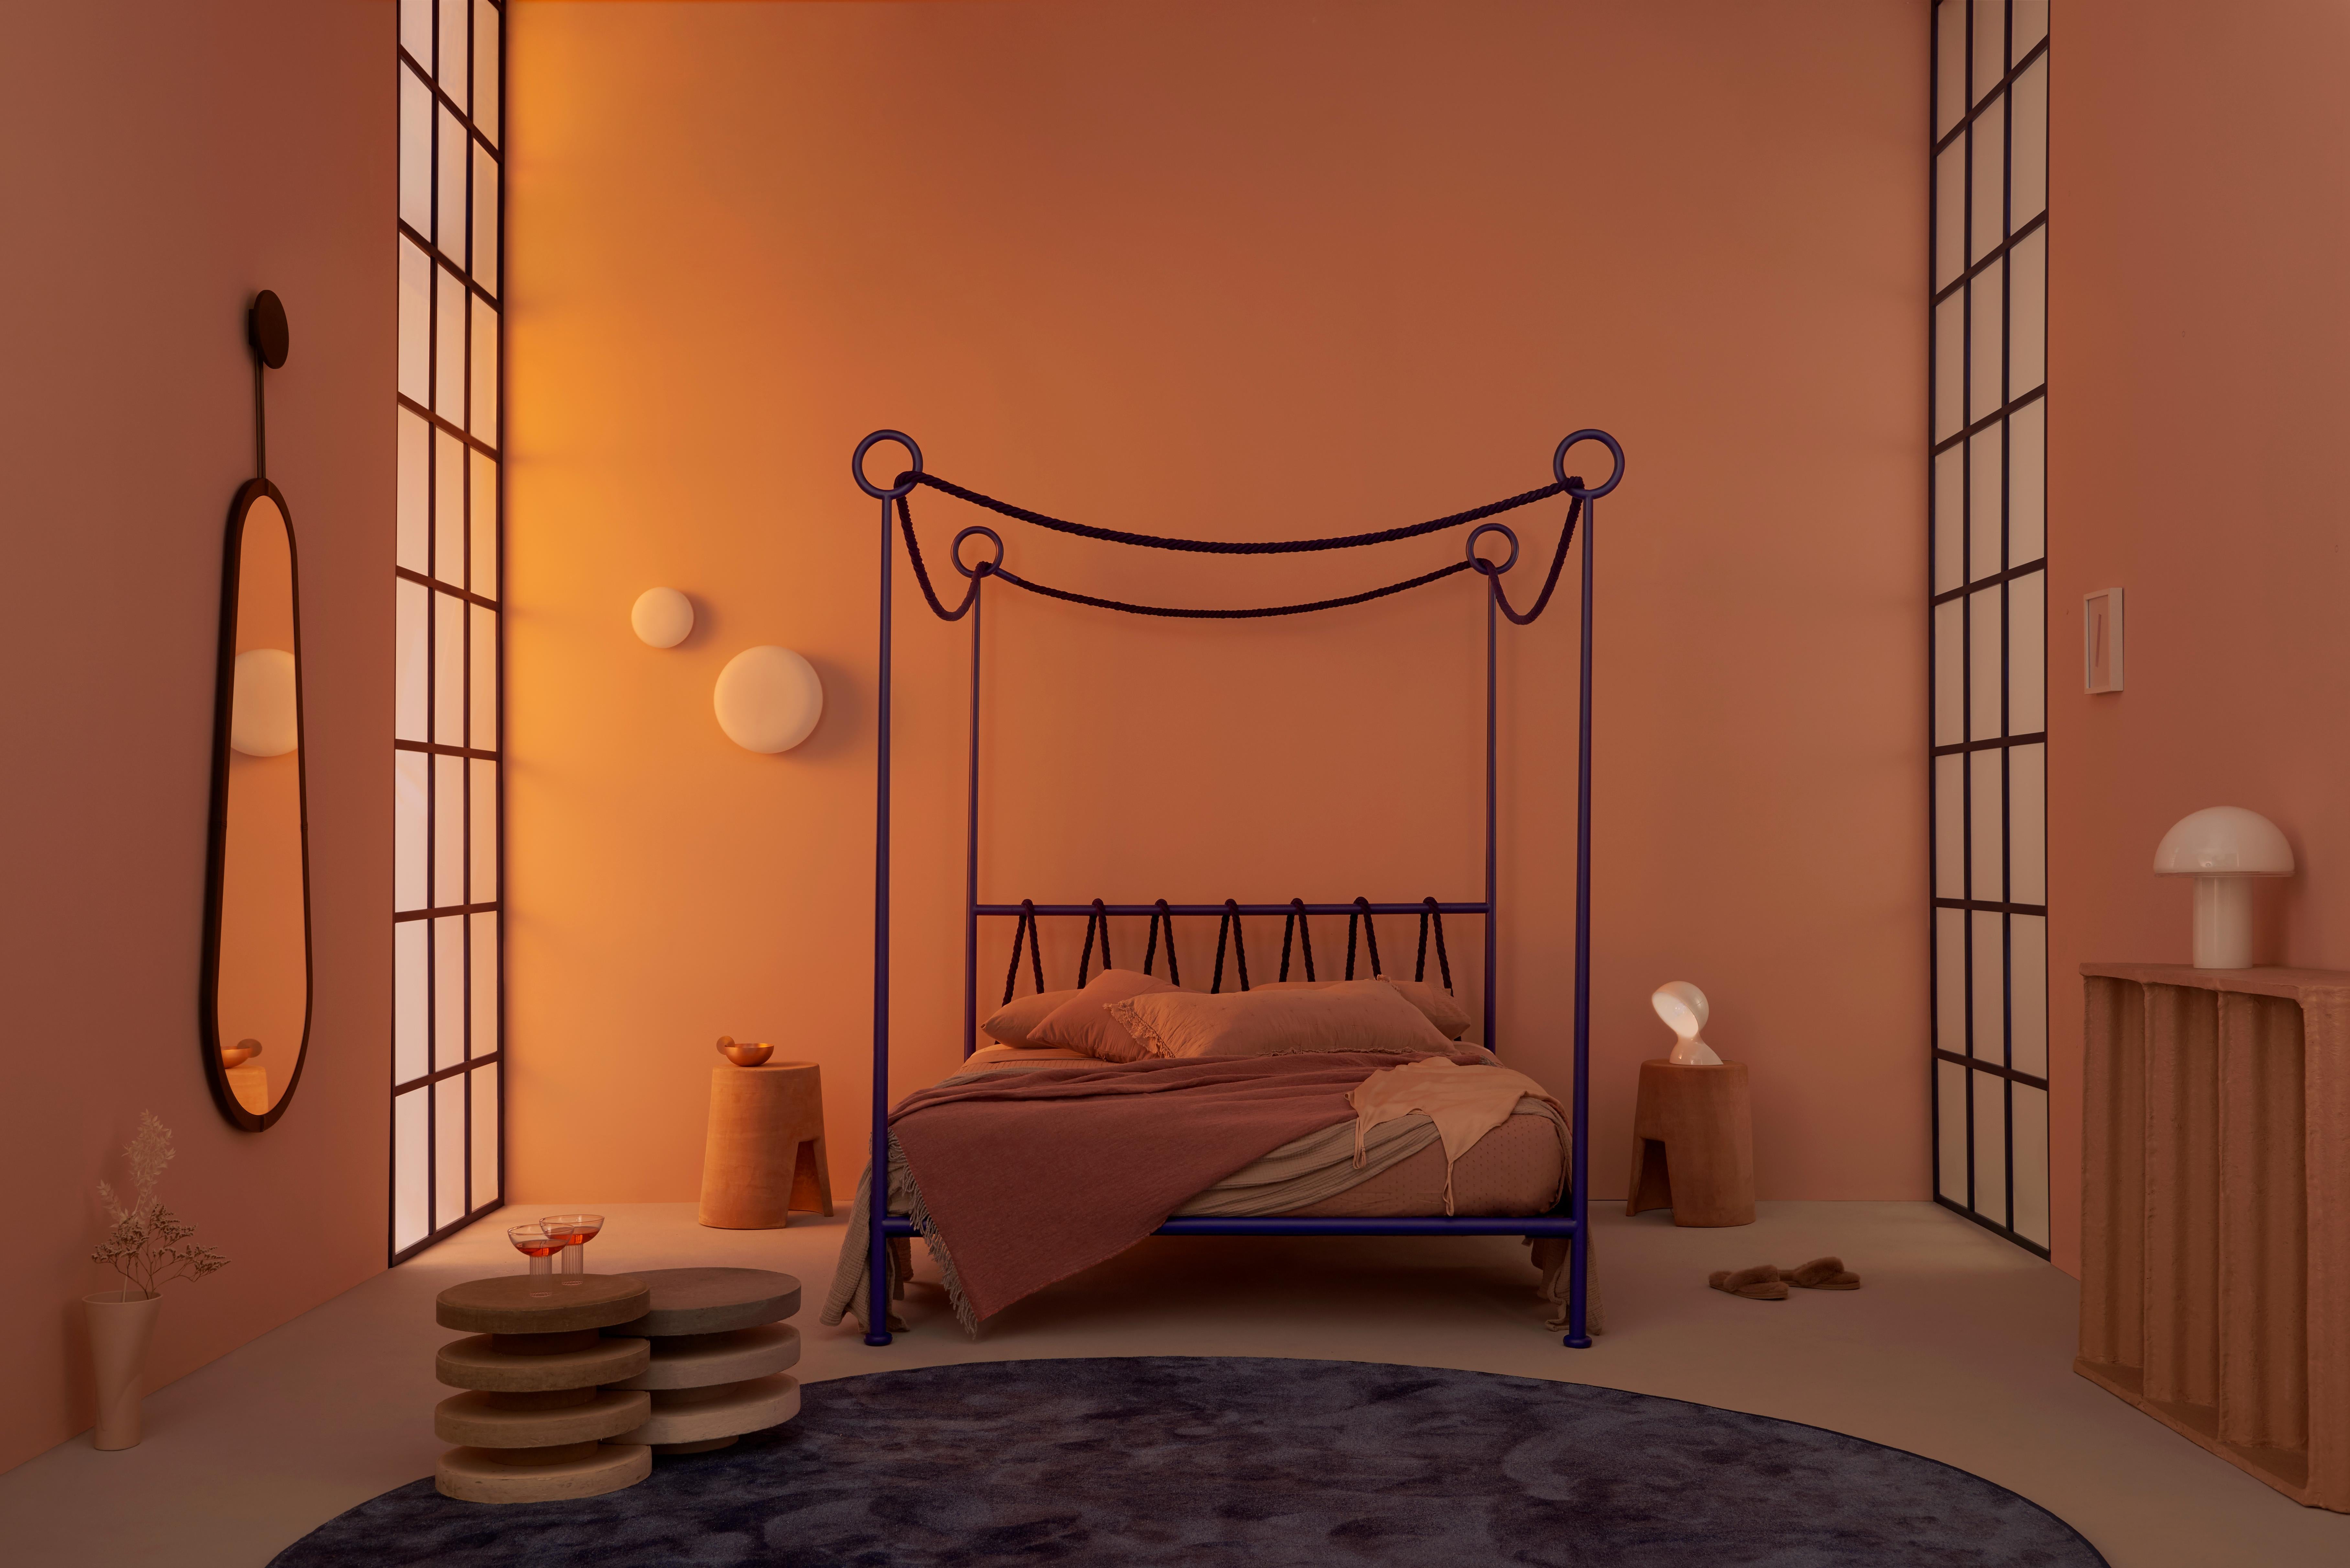 Cima Canopy Bed by Sovrappensiero Design Studio In New Condition For Sale In Città Della Pieve, PG